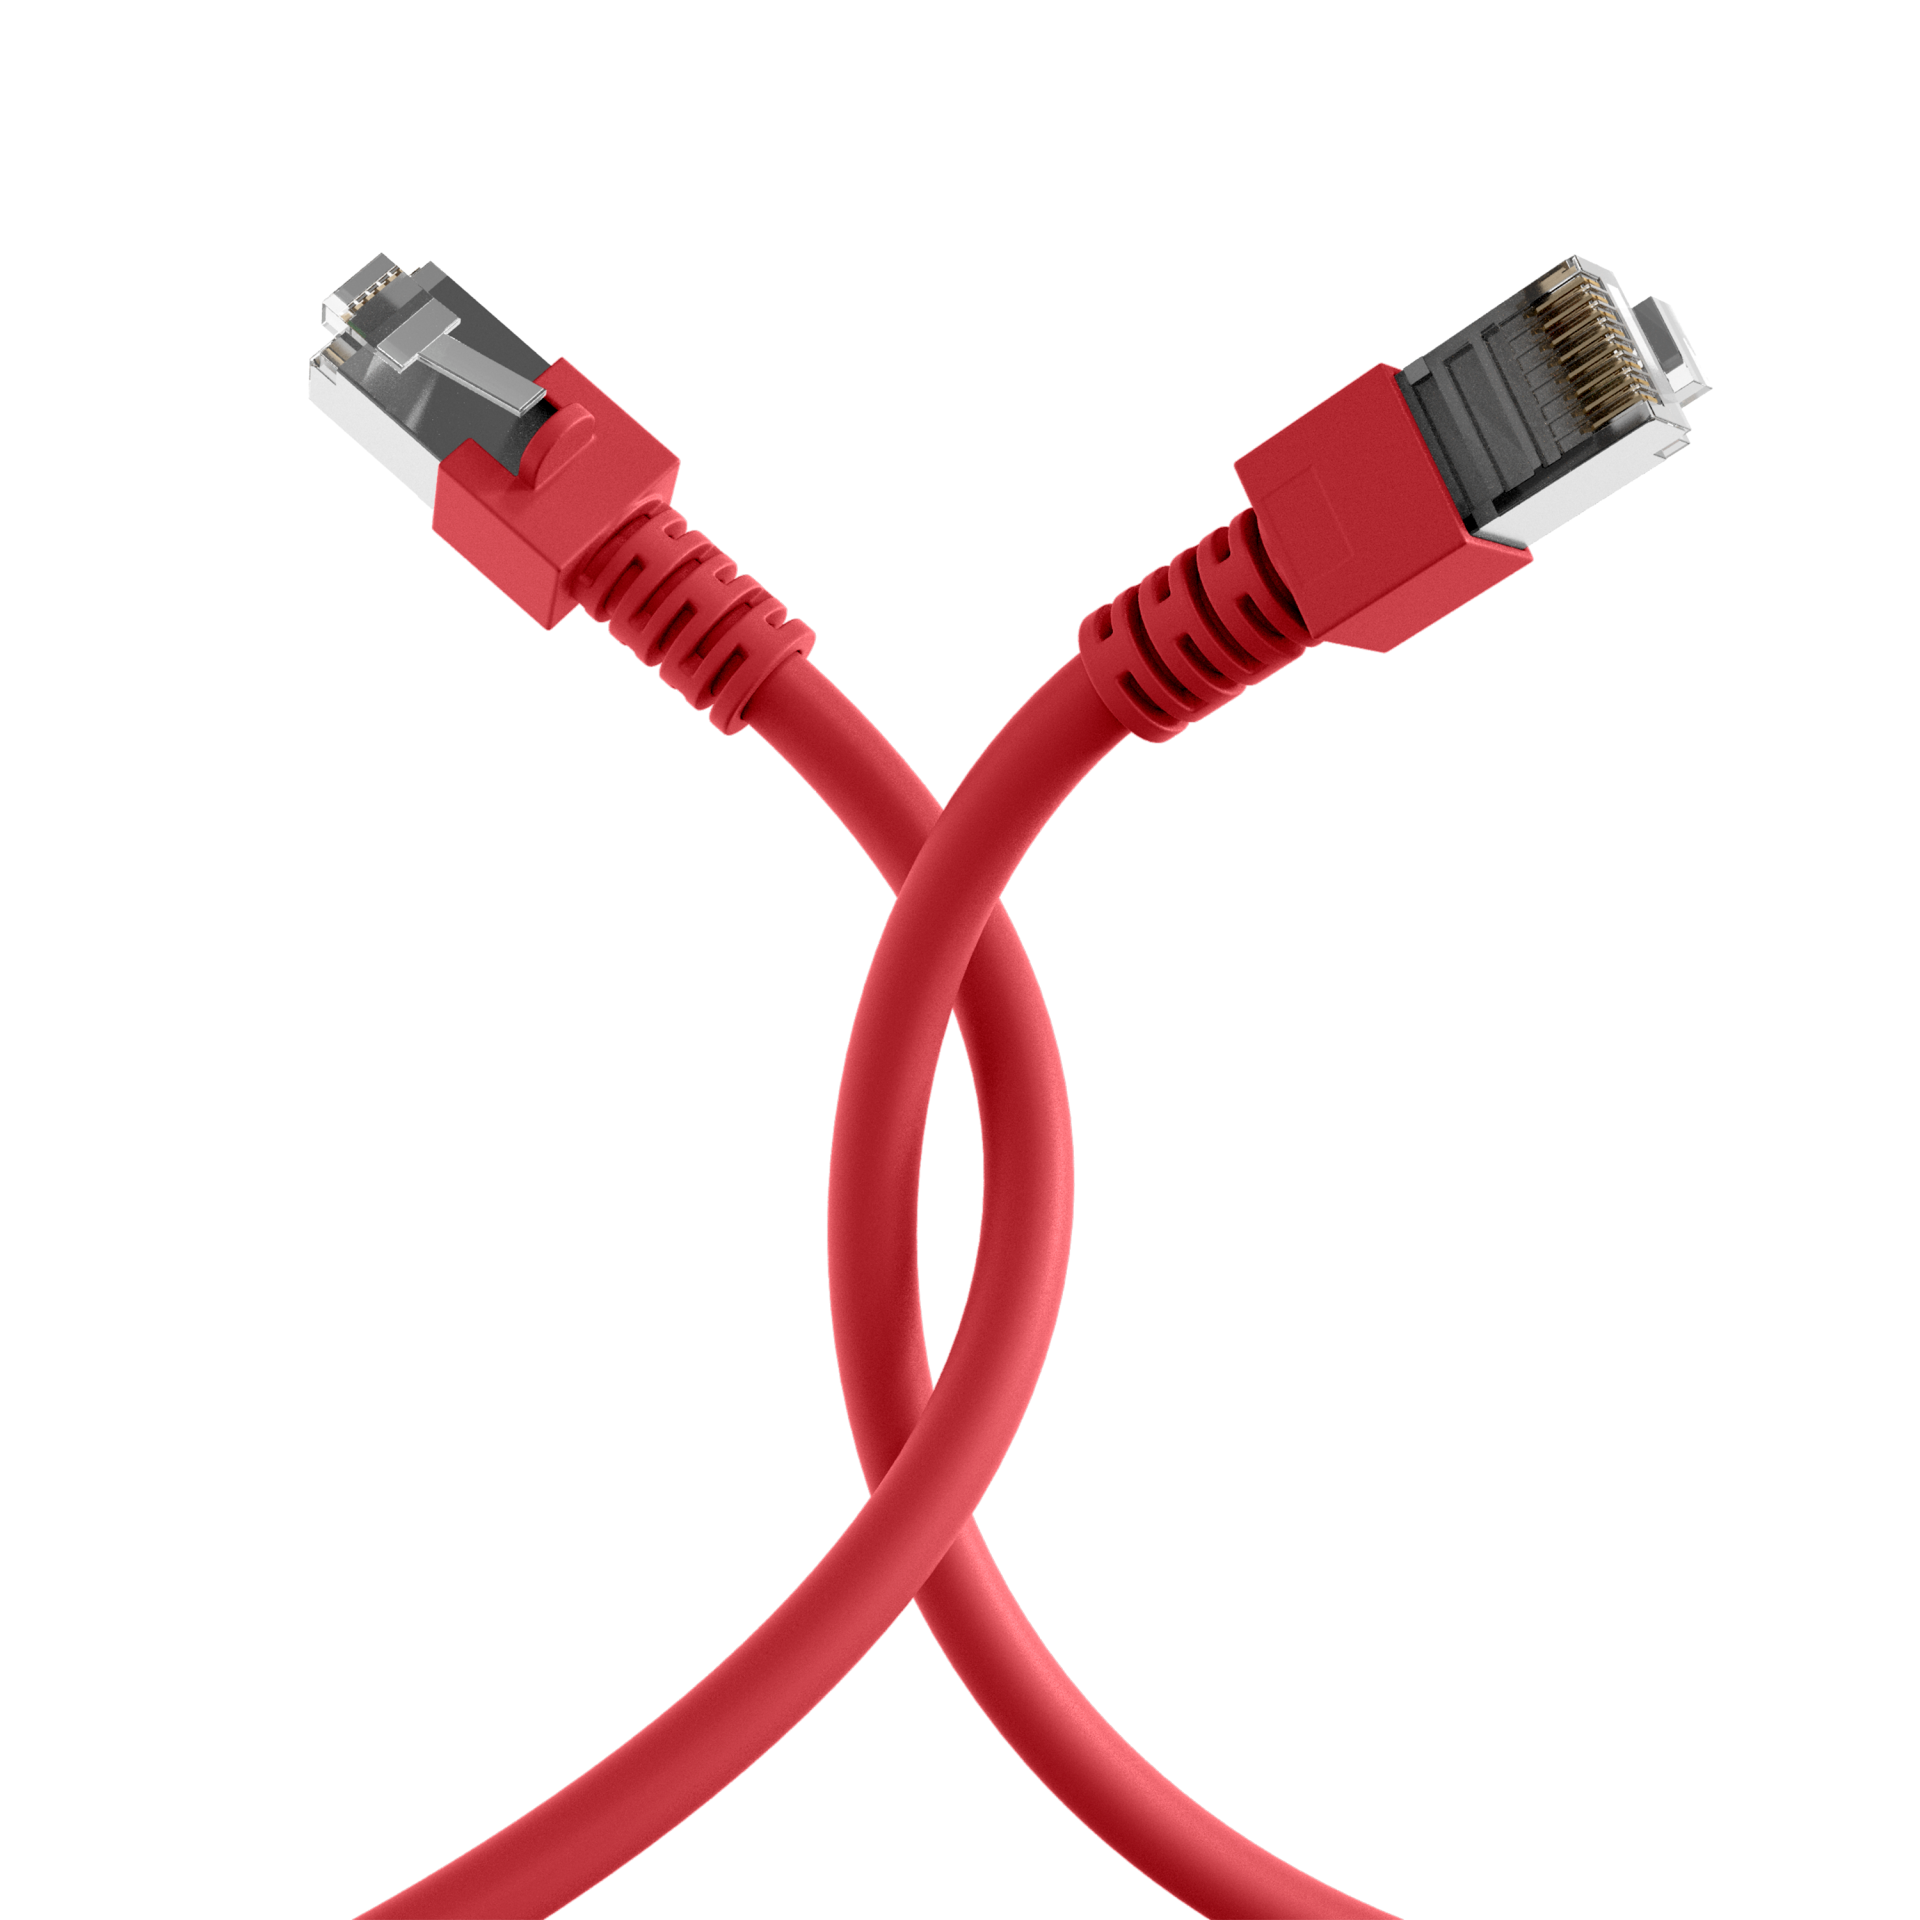 Cable De Red Utp 15 Metros Rj45 Cat 5e Patch Cord Ethernet